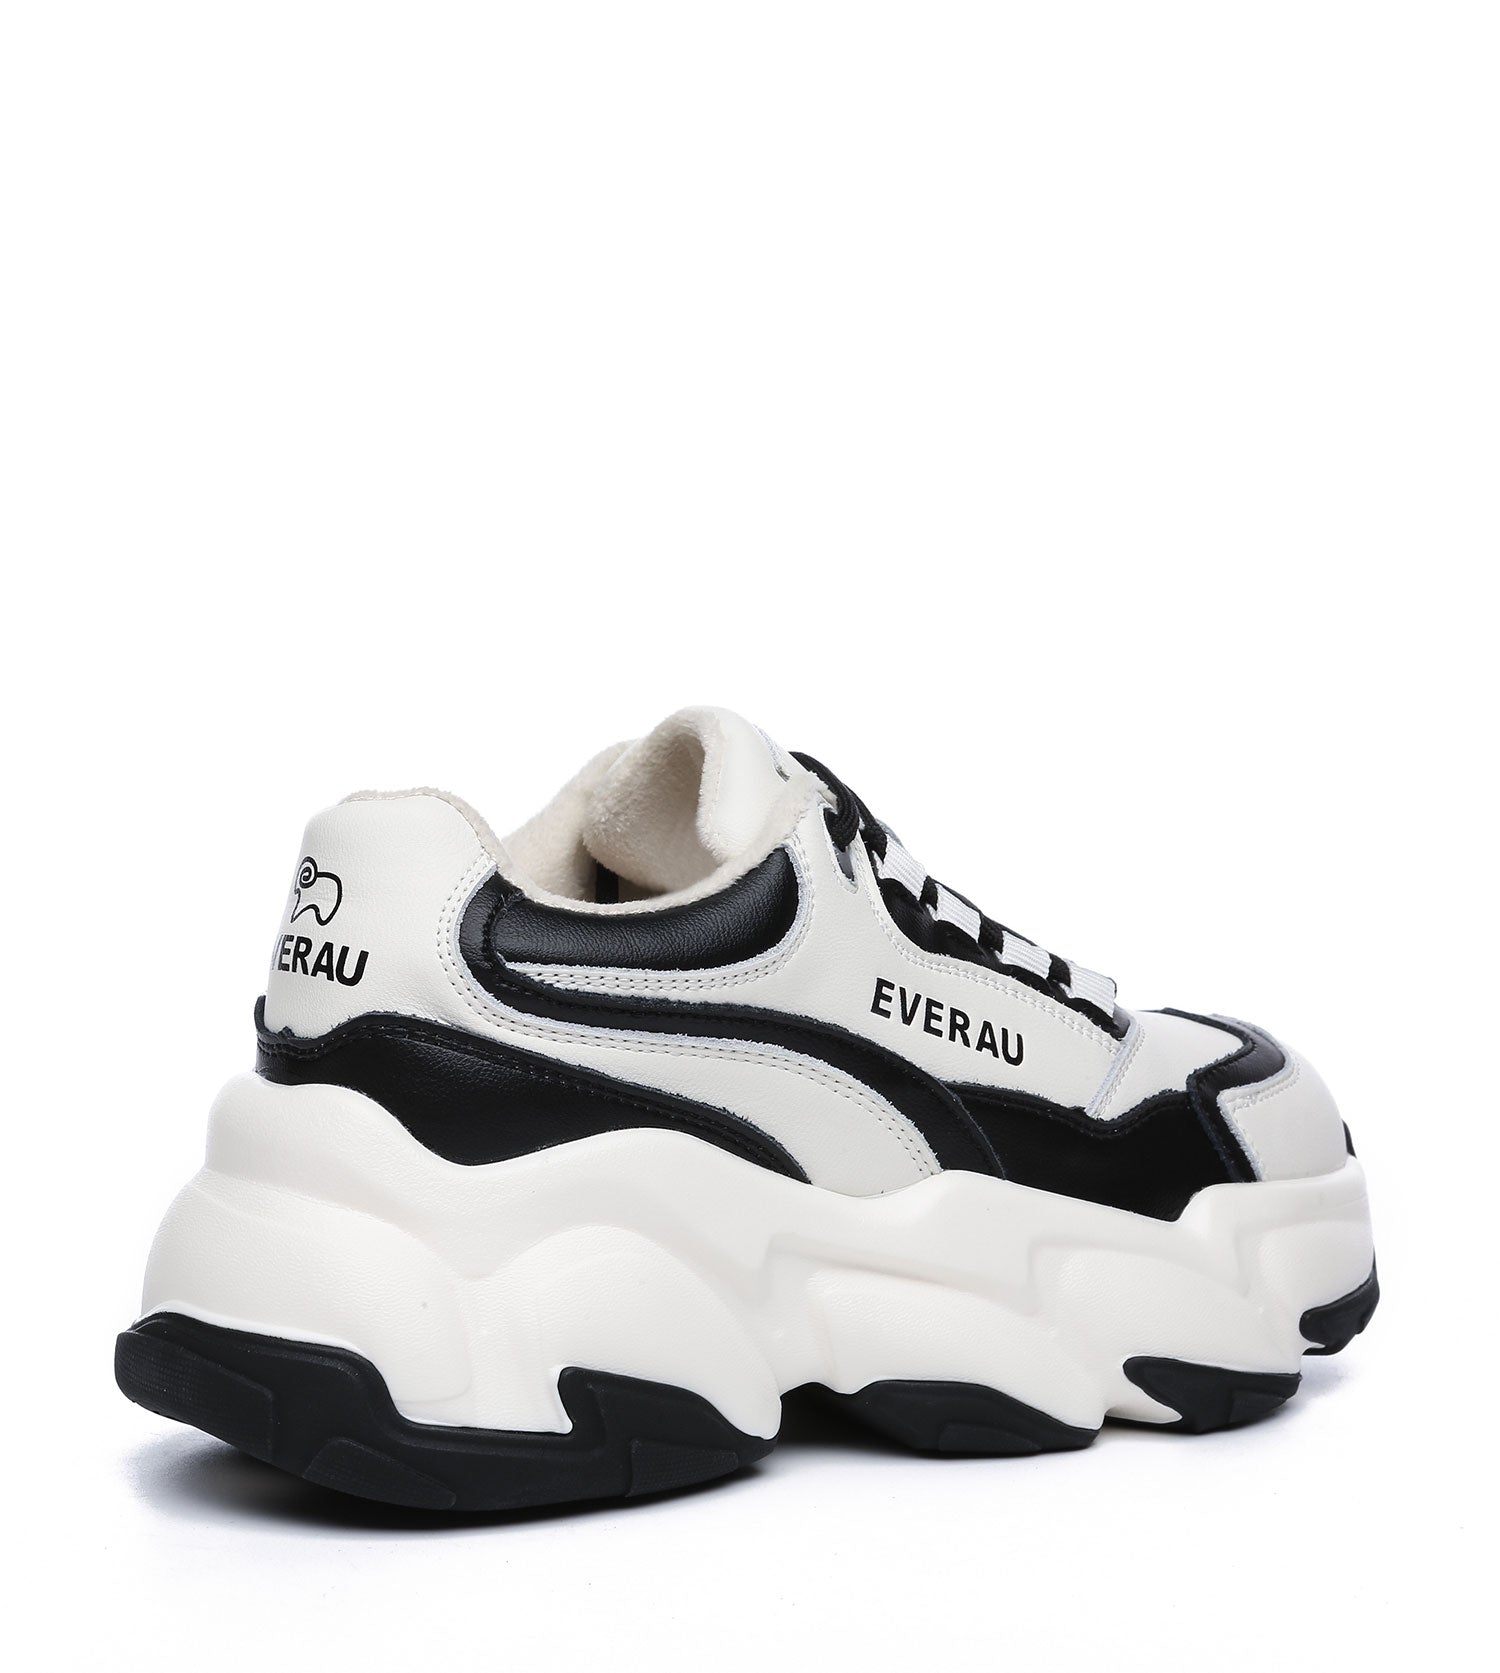 Panda Casual &amp; Sneaker for Women- EA5025 - EVERAU-Sneakers-PEROZ Accessories